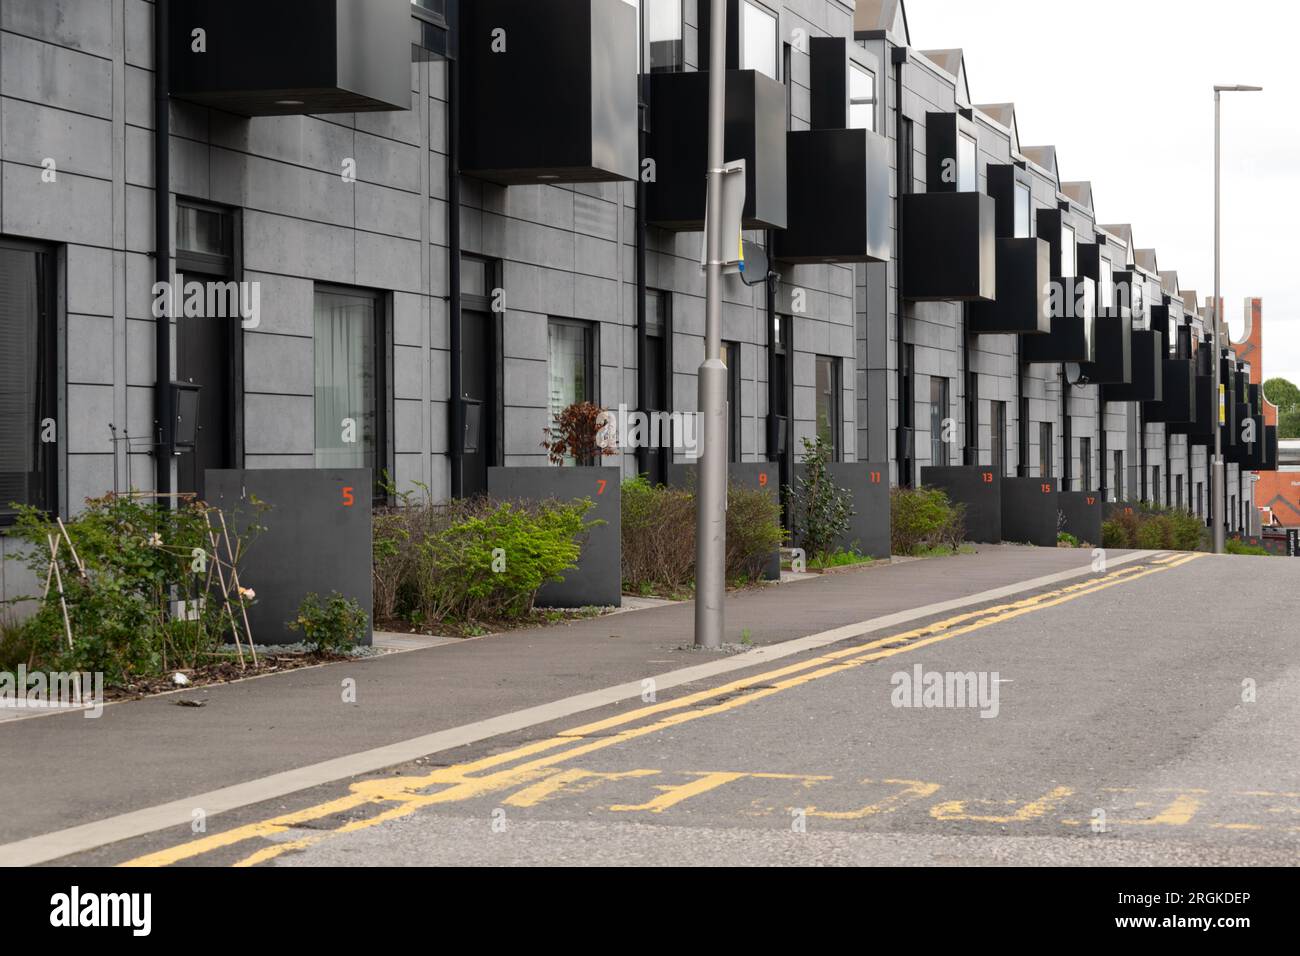 Nouvelles maisons préfabriquées modulaires Islington Lockyard Lane. Manchester UK. Banque D'Images